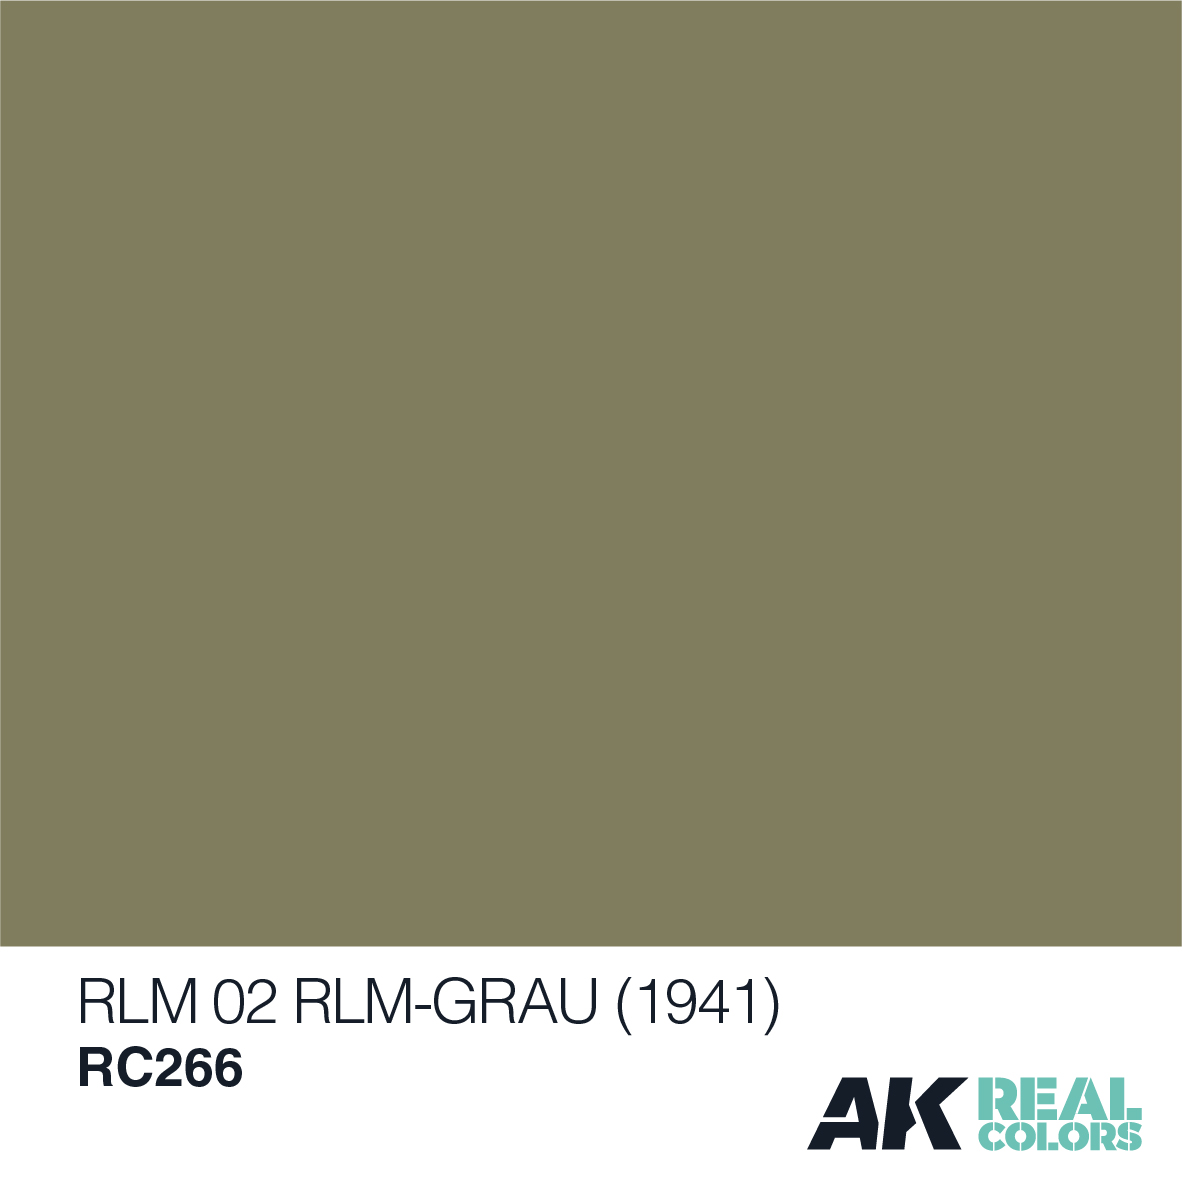 RLM 02 RLM-GRAU (1941)